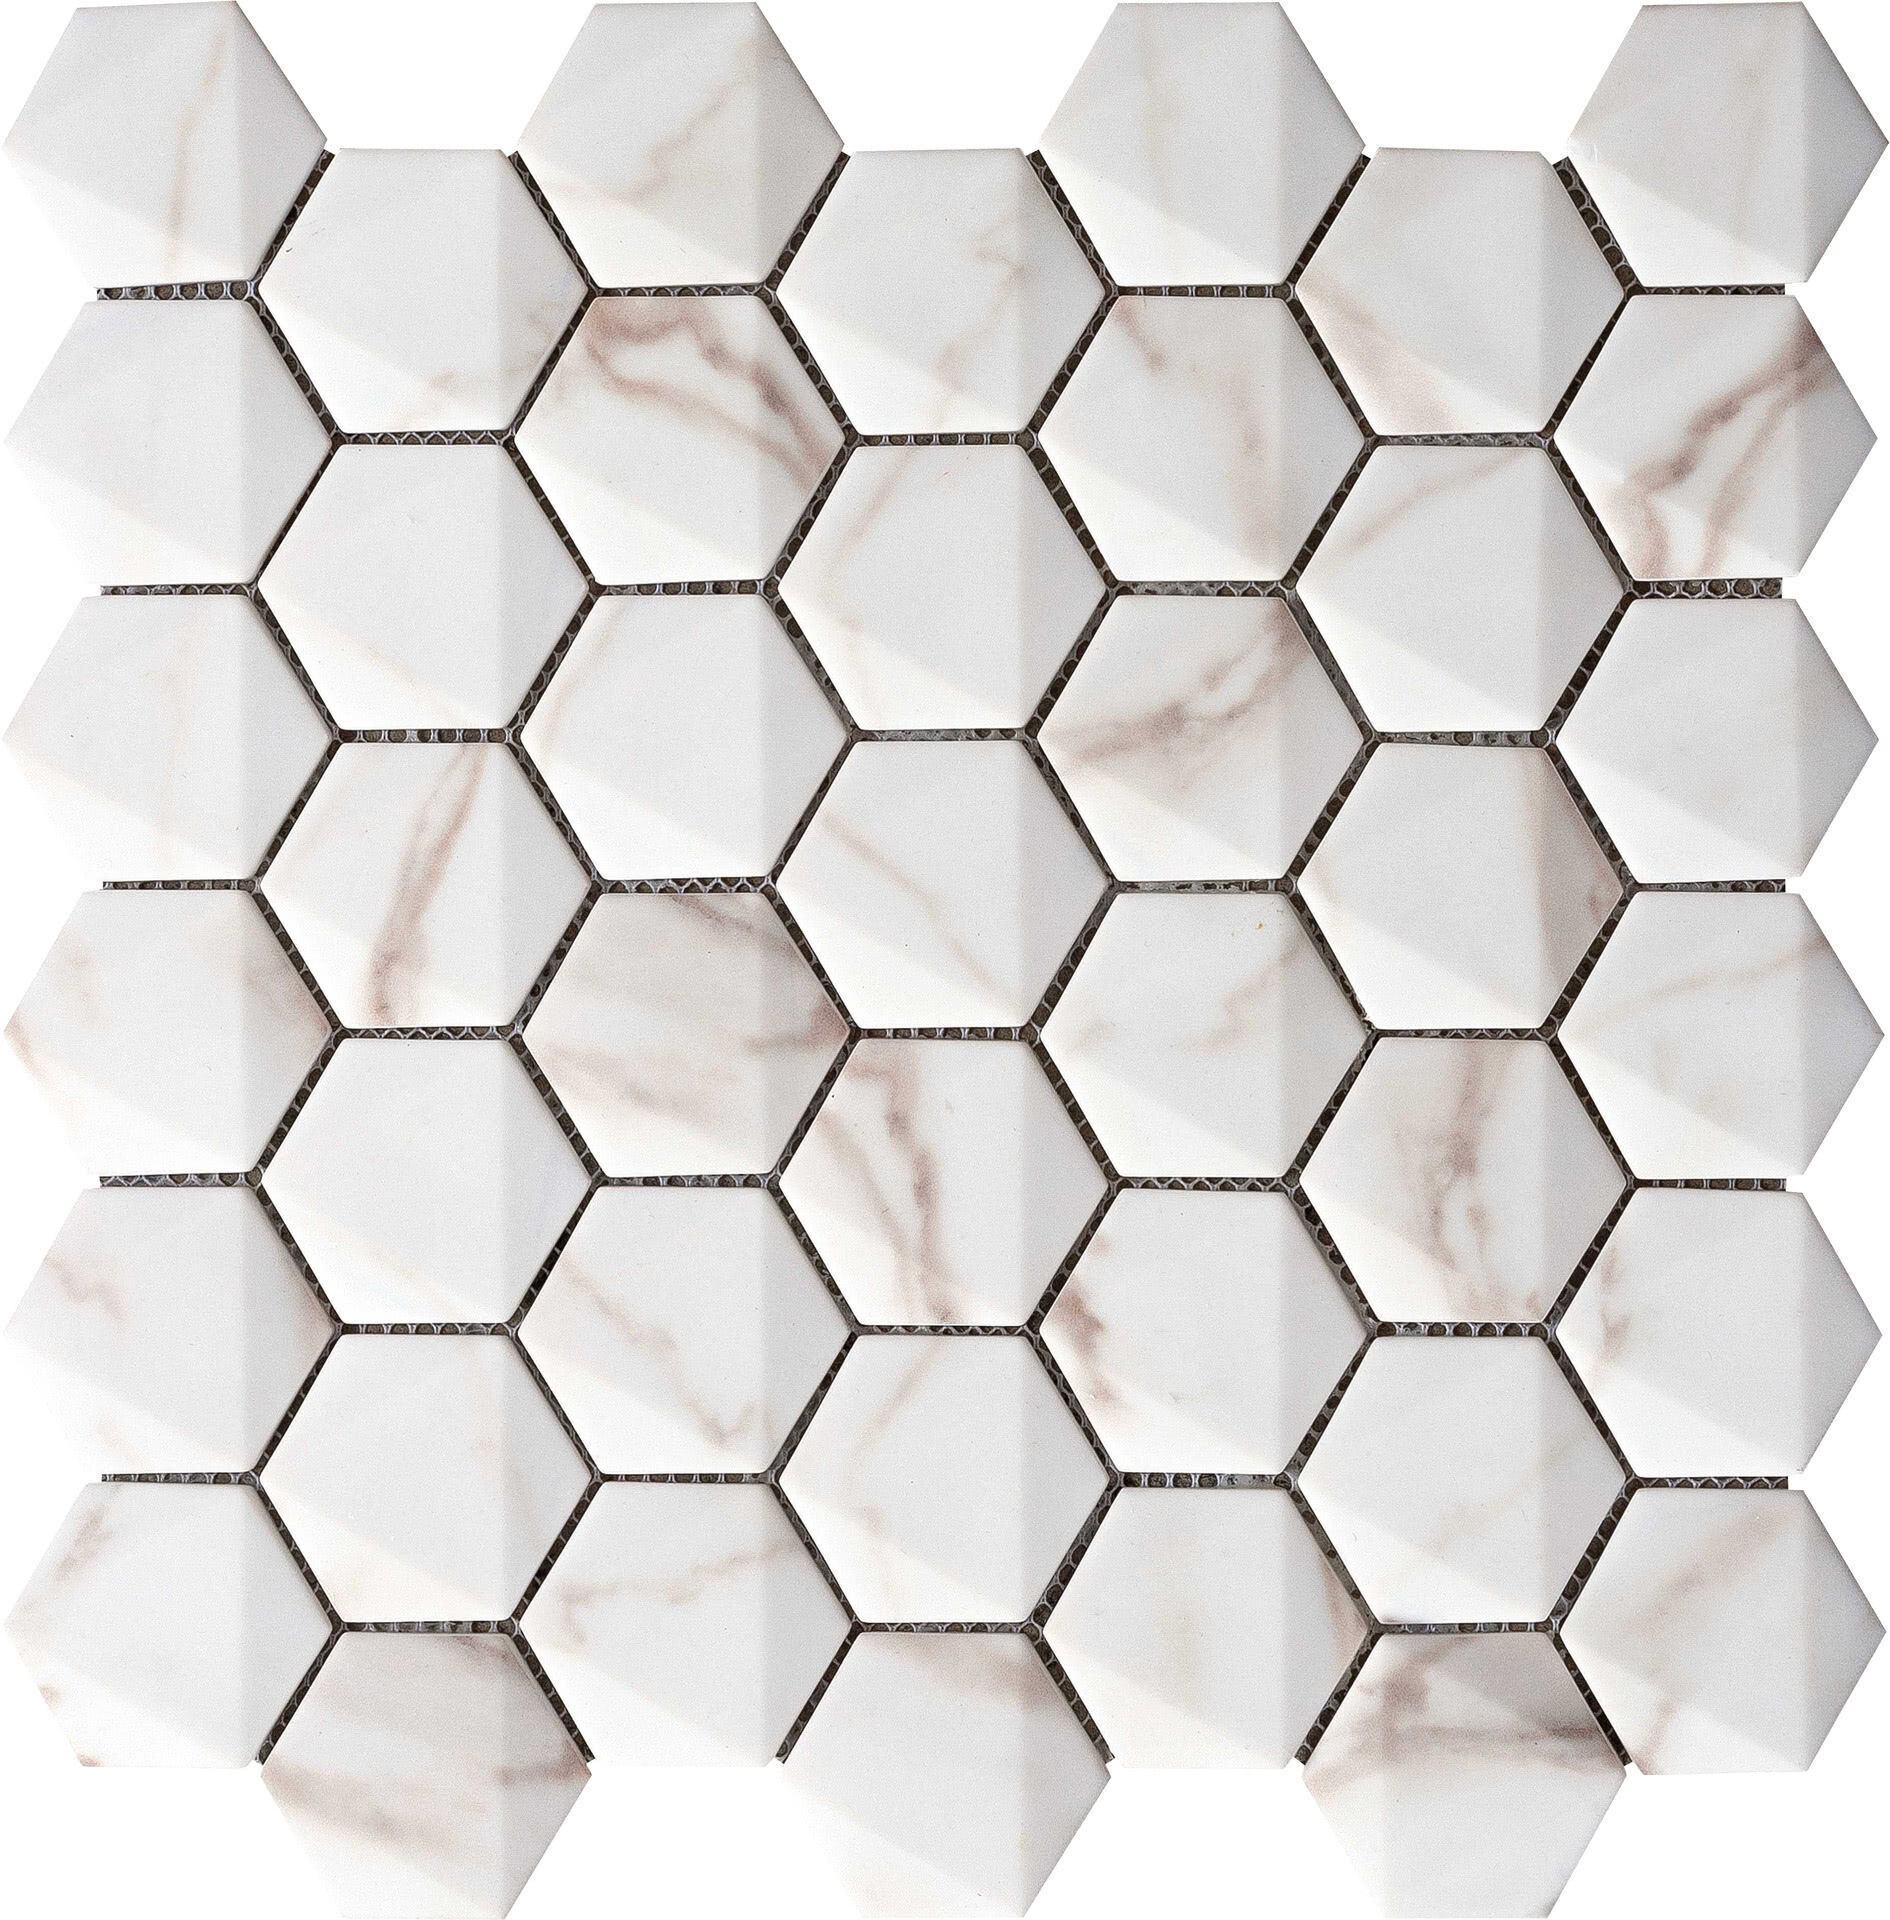 Керамическая плитка Керамин Grespania Marmorea Hexagonal Calacata Мозаика 30х30